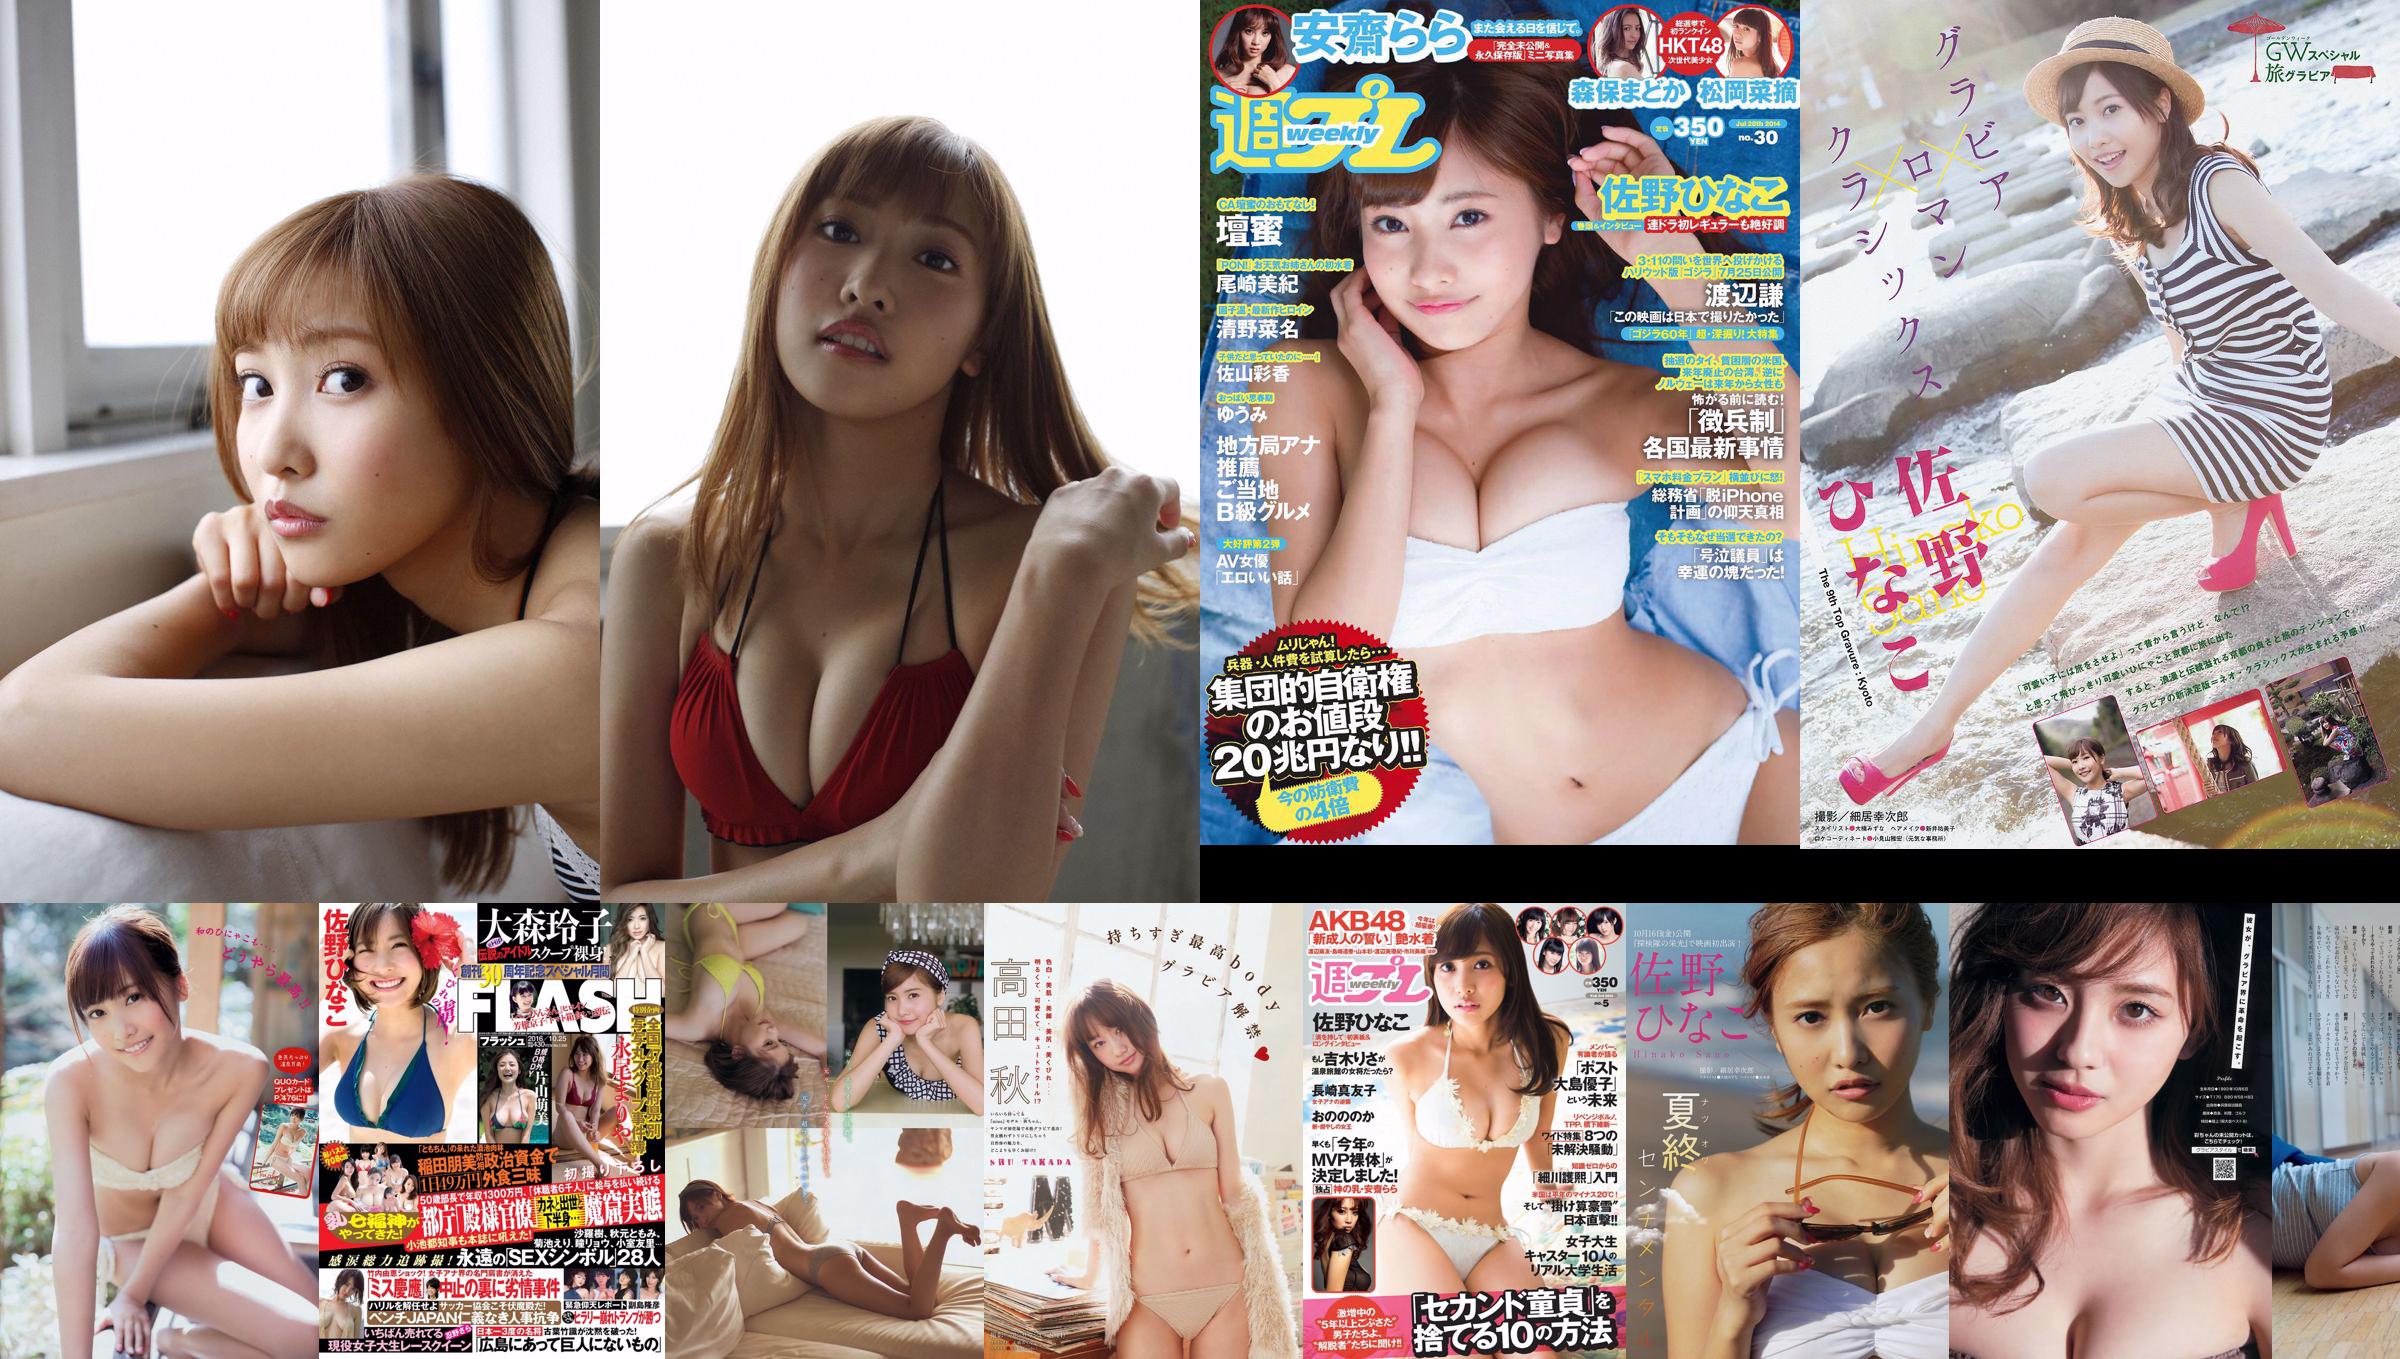 [Young Magazine] Hinako Sano 2014 No.31 Photographie No.f2e4b8 Page 1